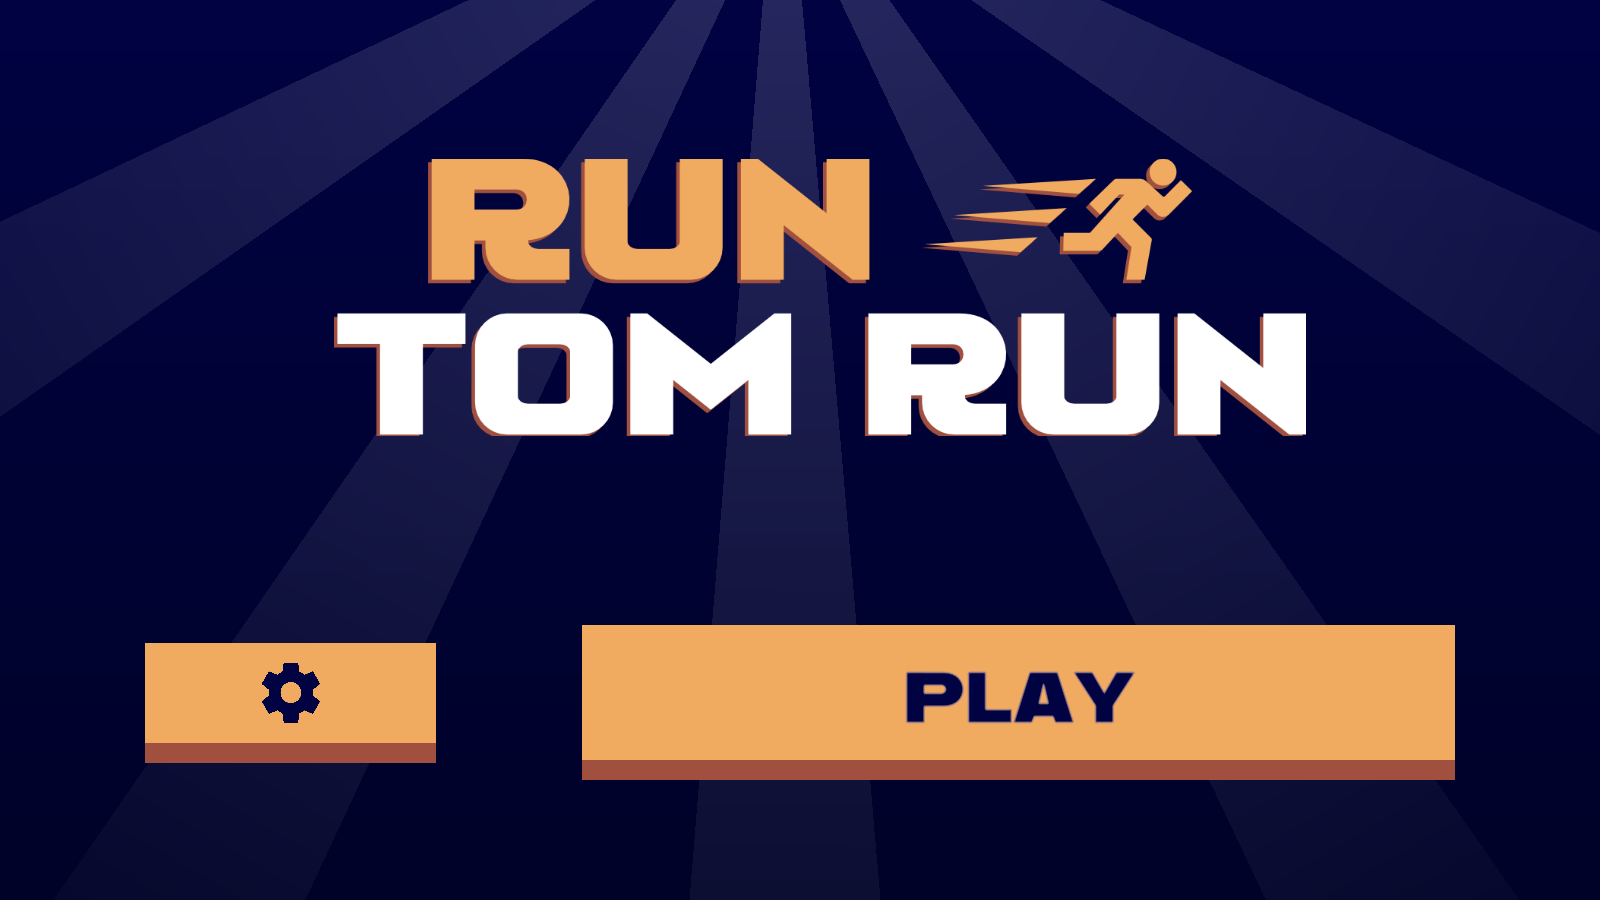 The Run Tom Run Level